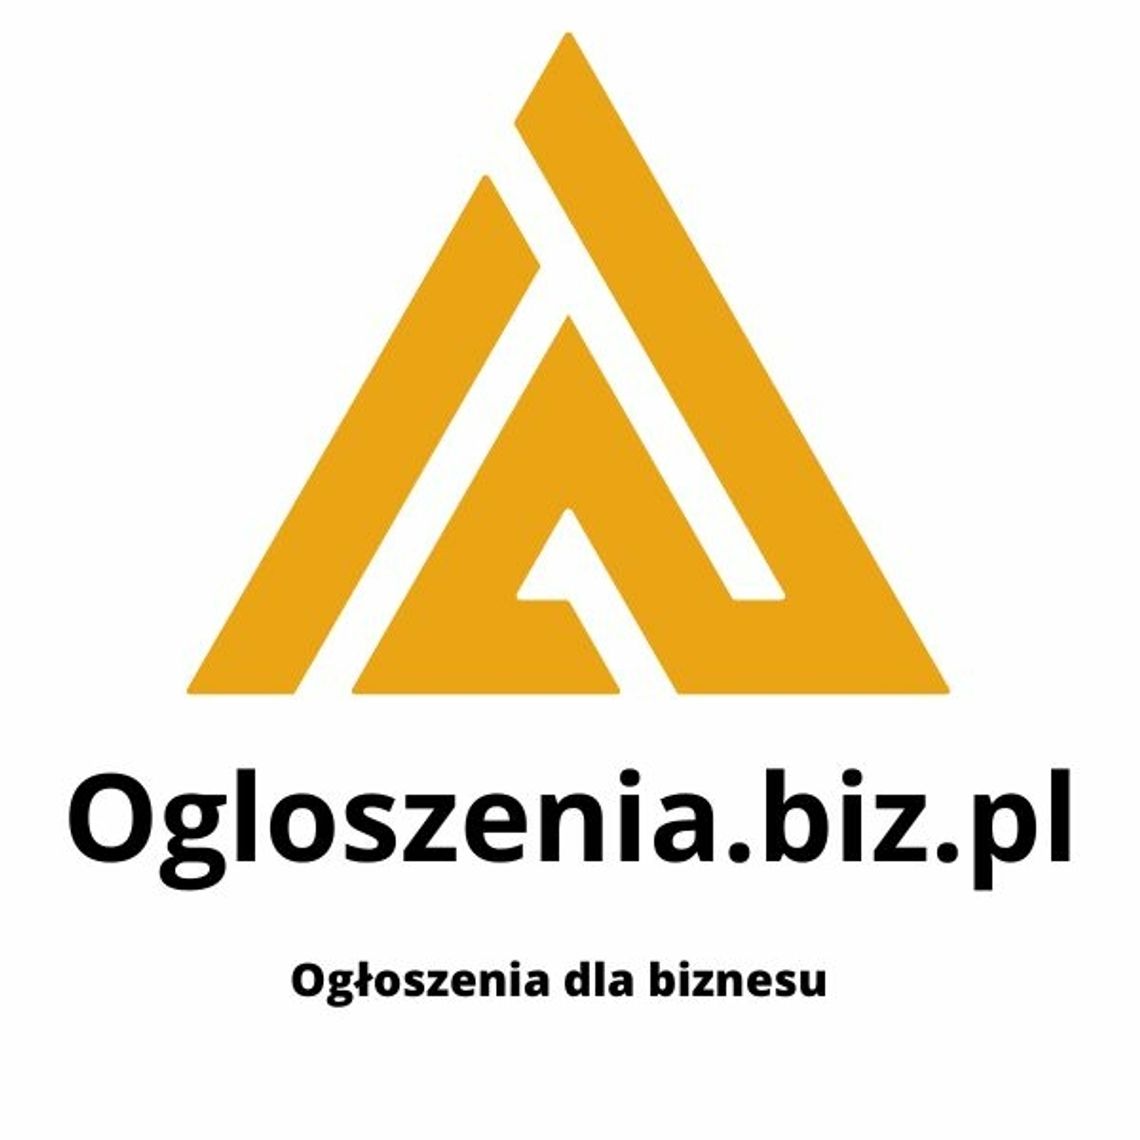 Ogloszenia.biz.pl - Dodaj swoją firmę i ofertę teraz